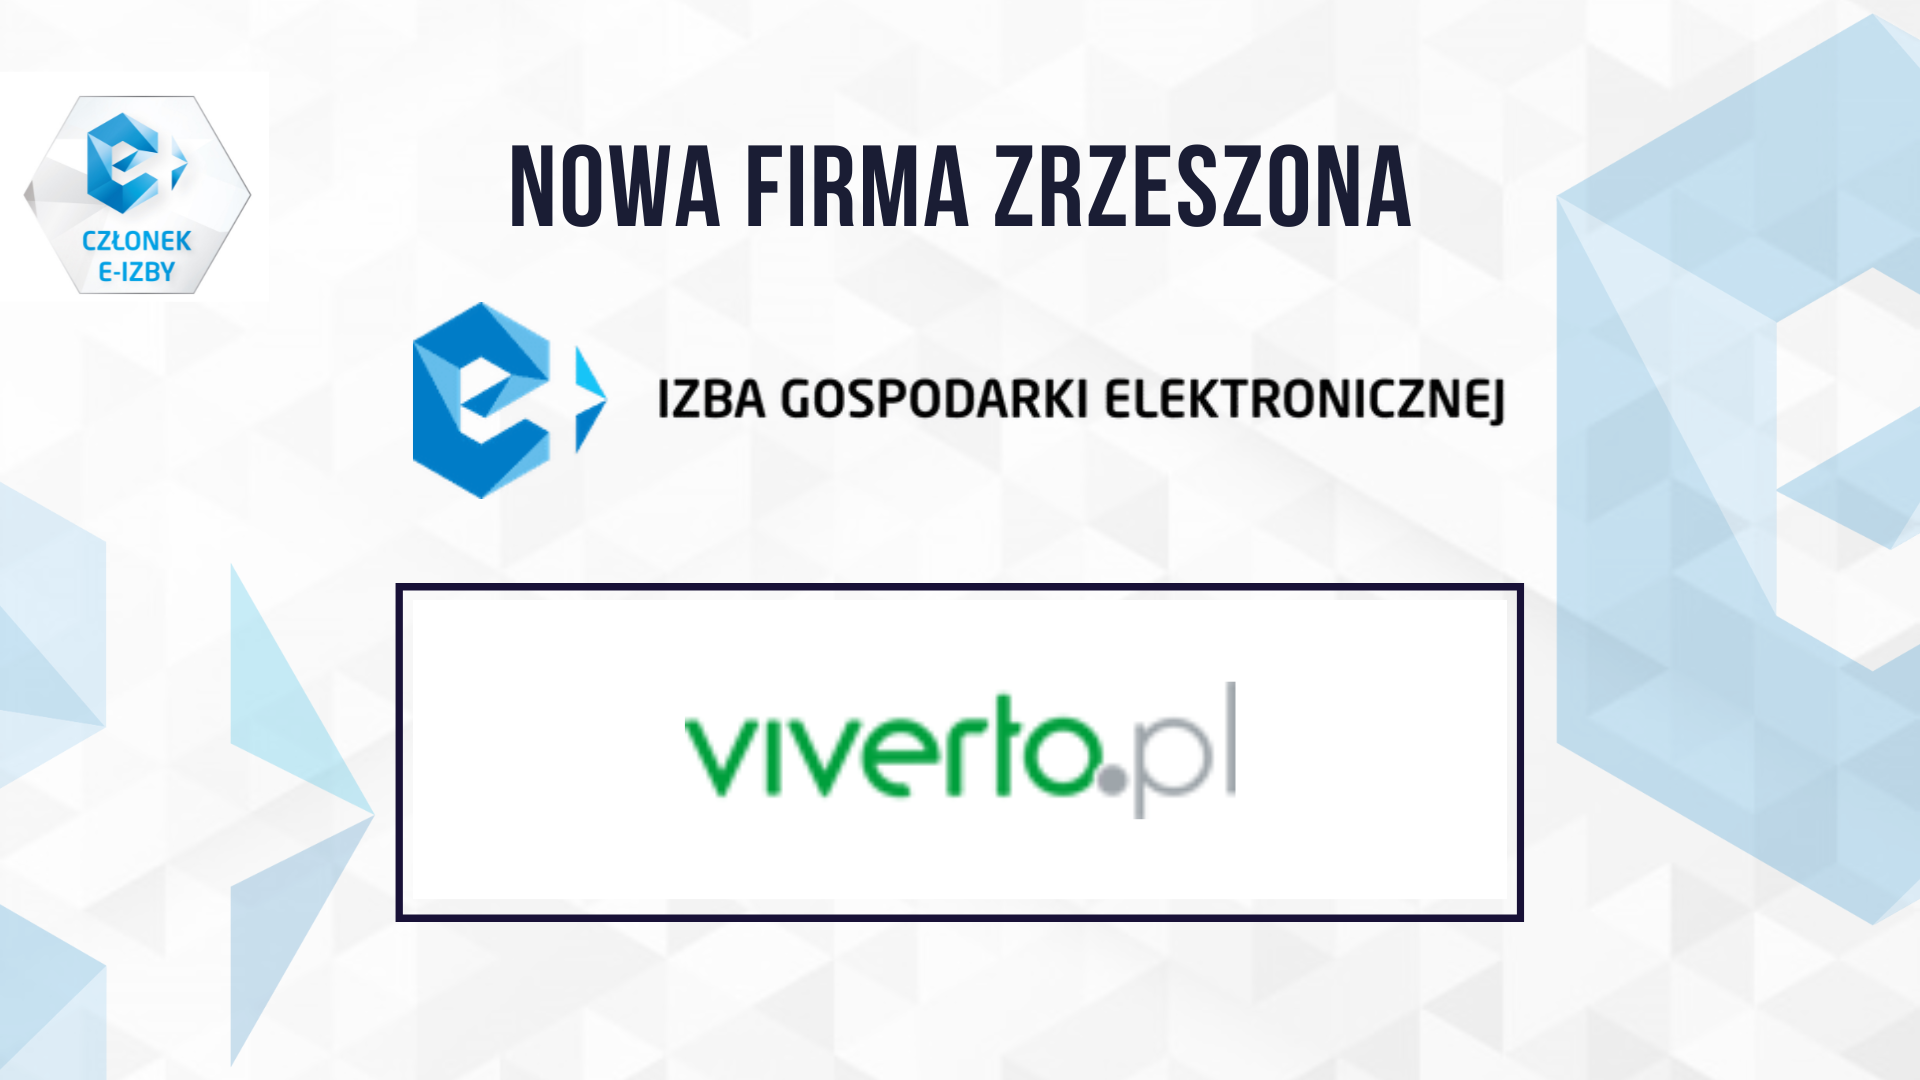 Nowoczesny sklep internetowy Viverto.pl dołączył do grona firm zrzeszonych w e-Izbie!